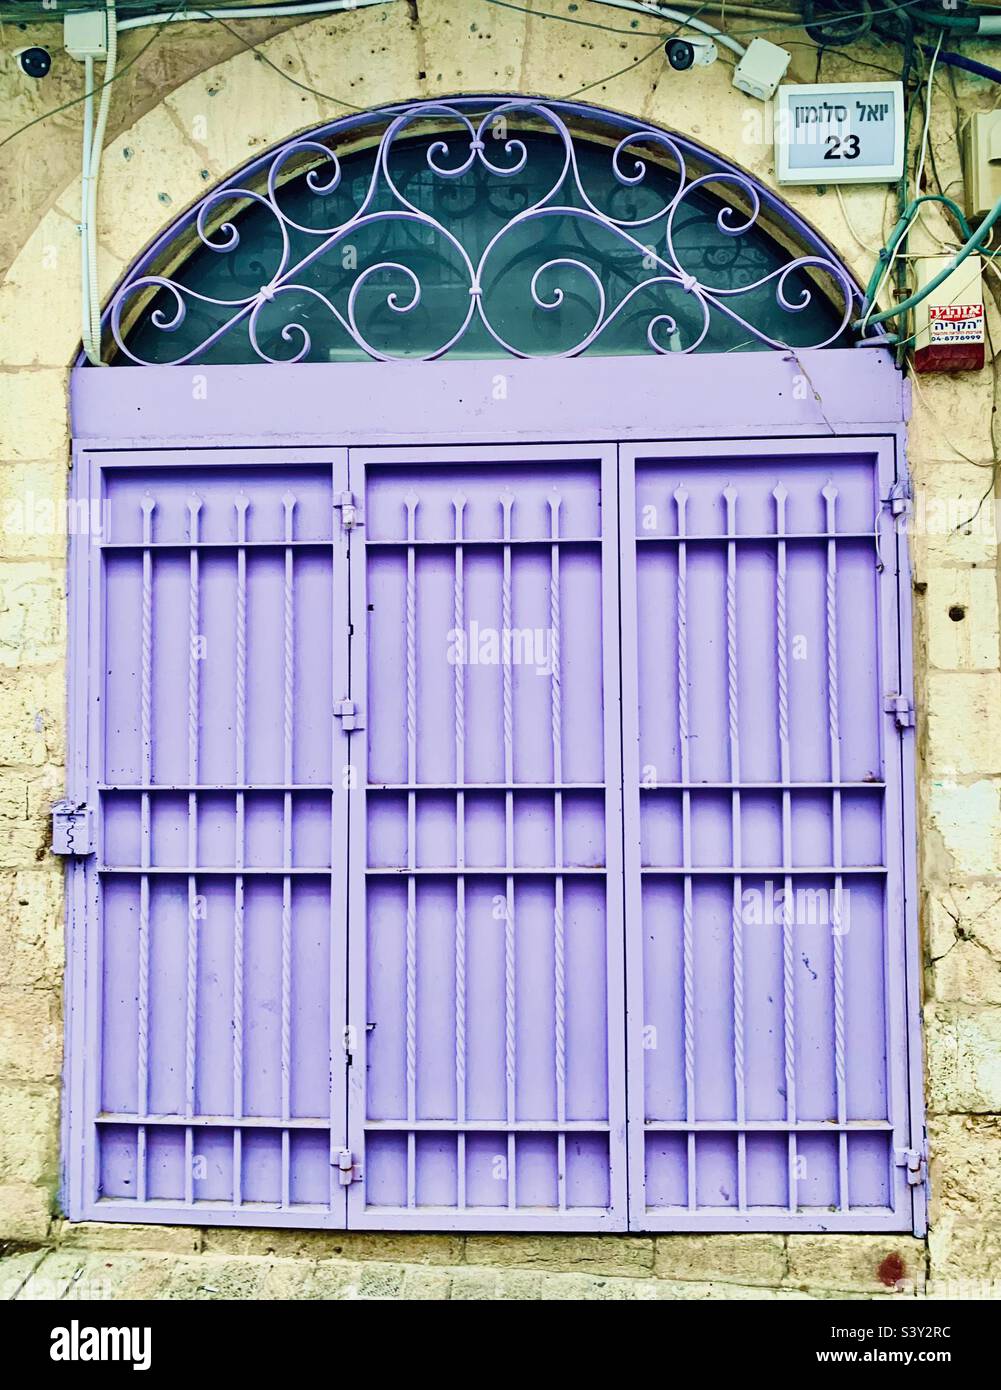 Wunderschöne Türen und Fenster im Nahalat Shiv’a Viertel in Jerusalem. Stockfoto